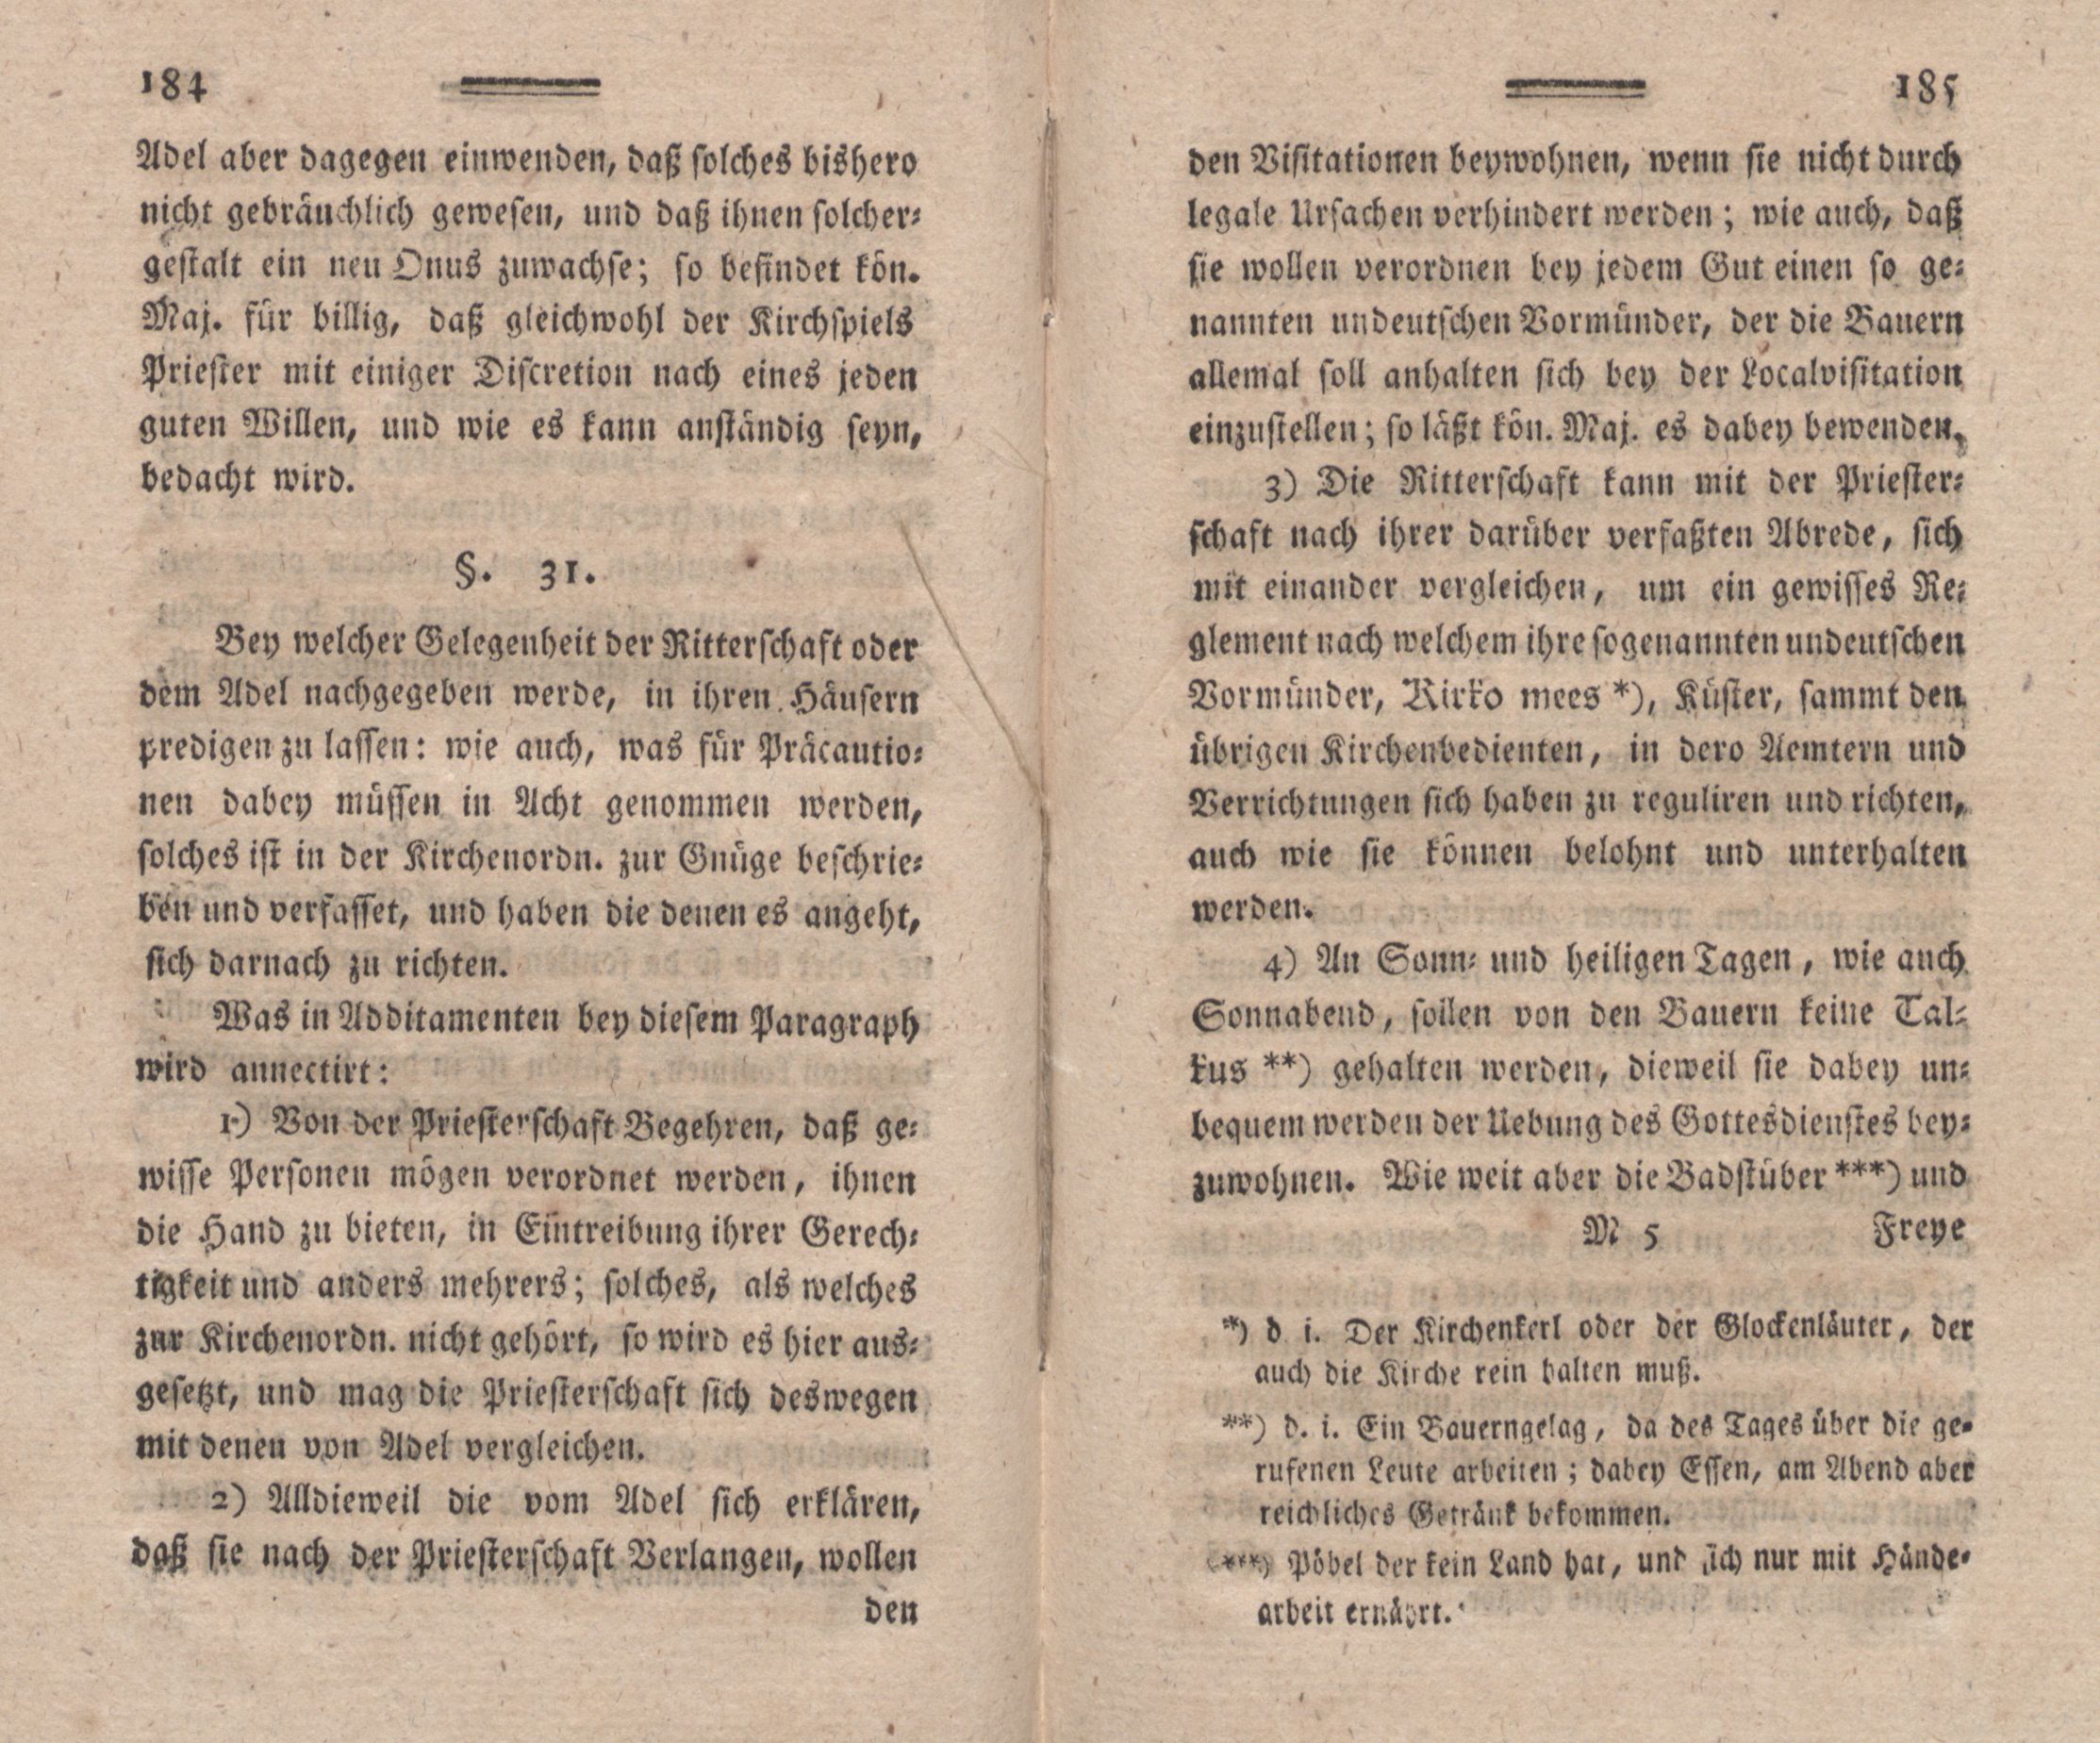 Nordische Miscellaneen [02] (1781) | 93. (184-185) Main body of text